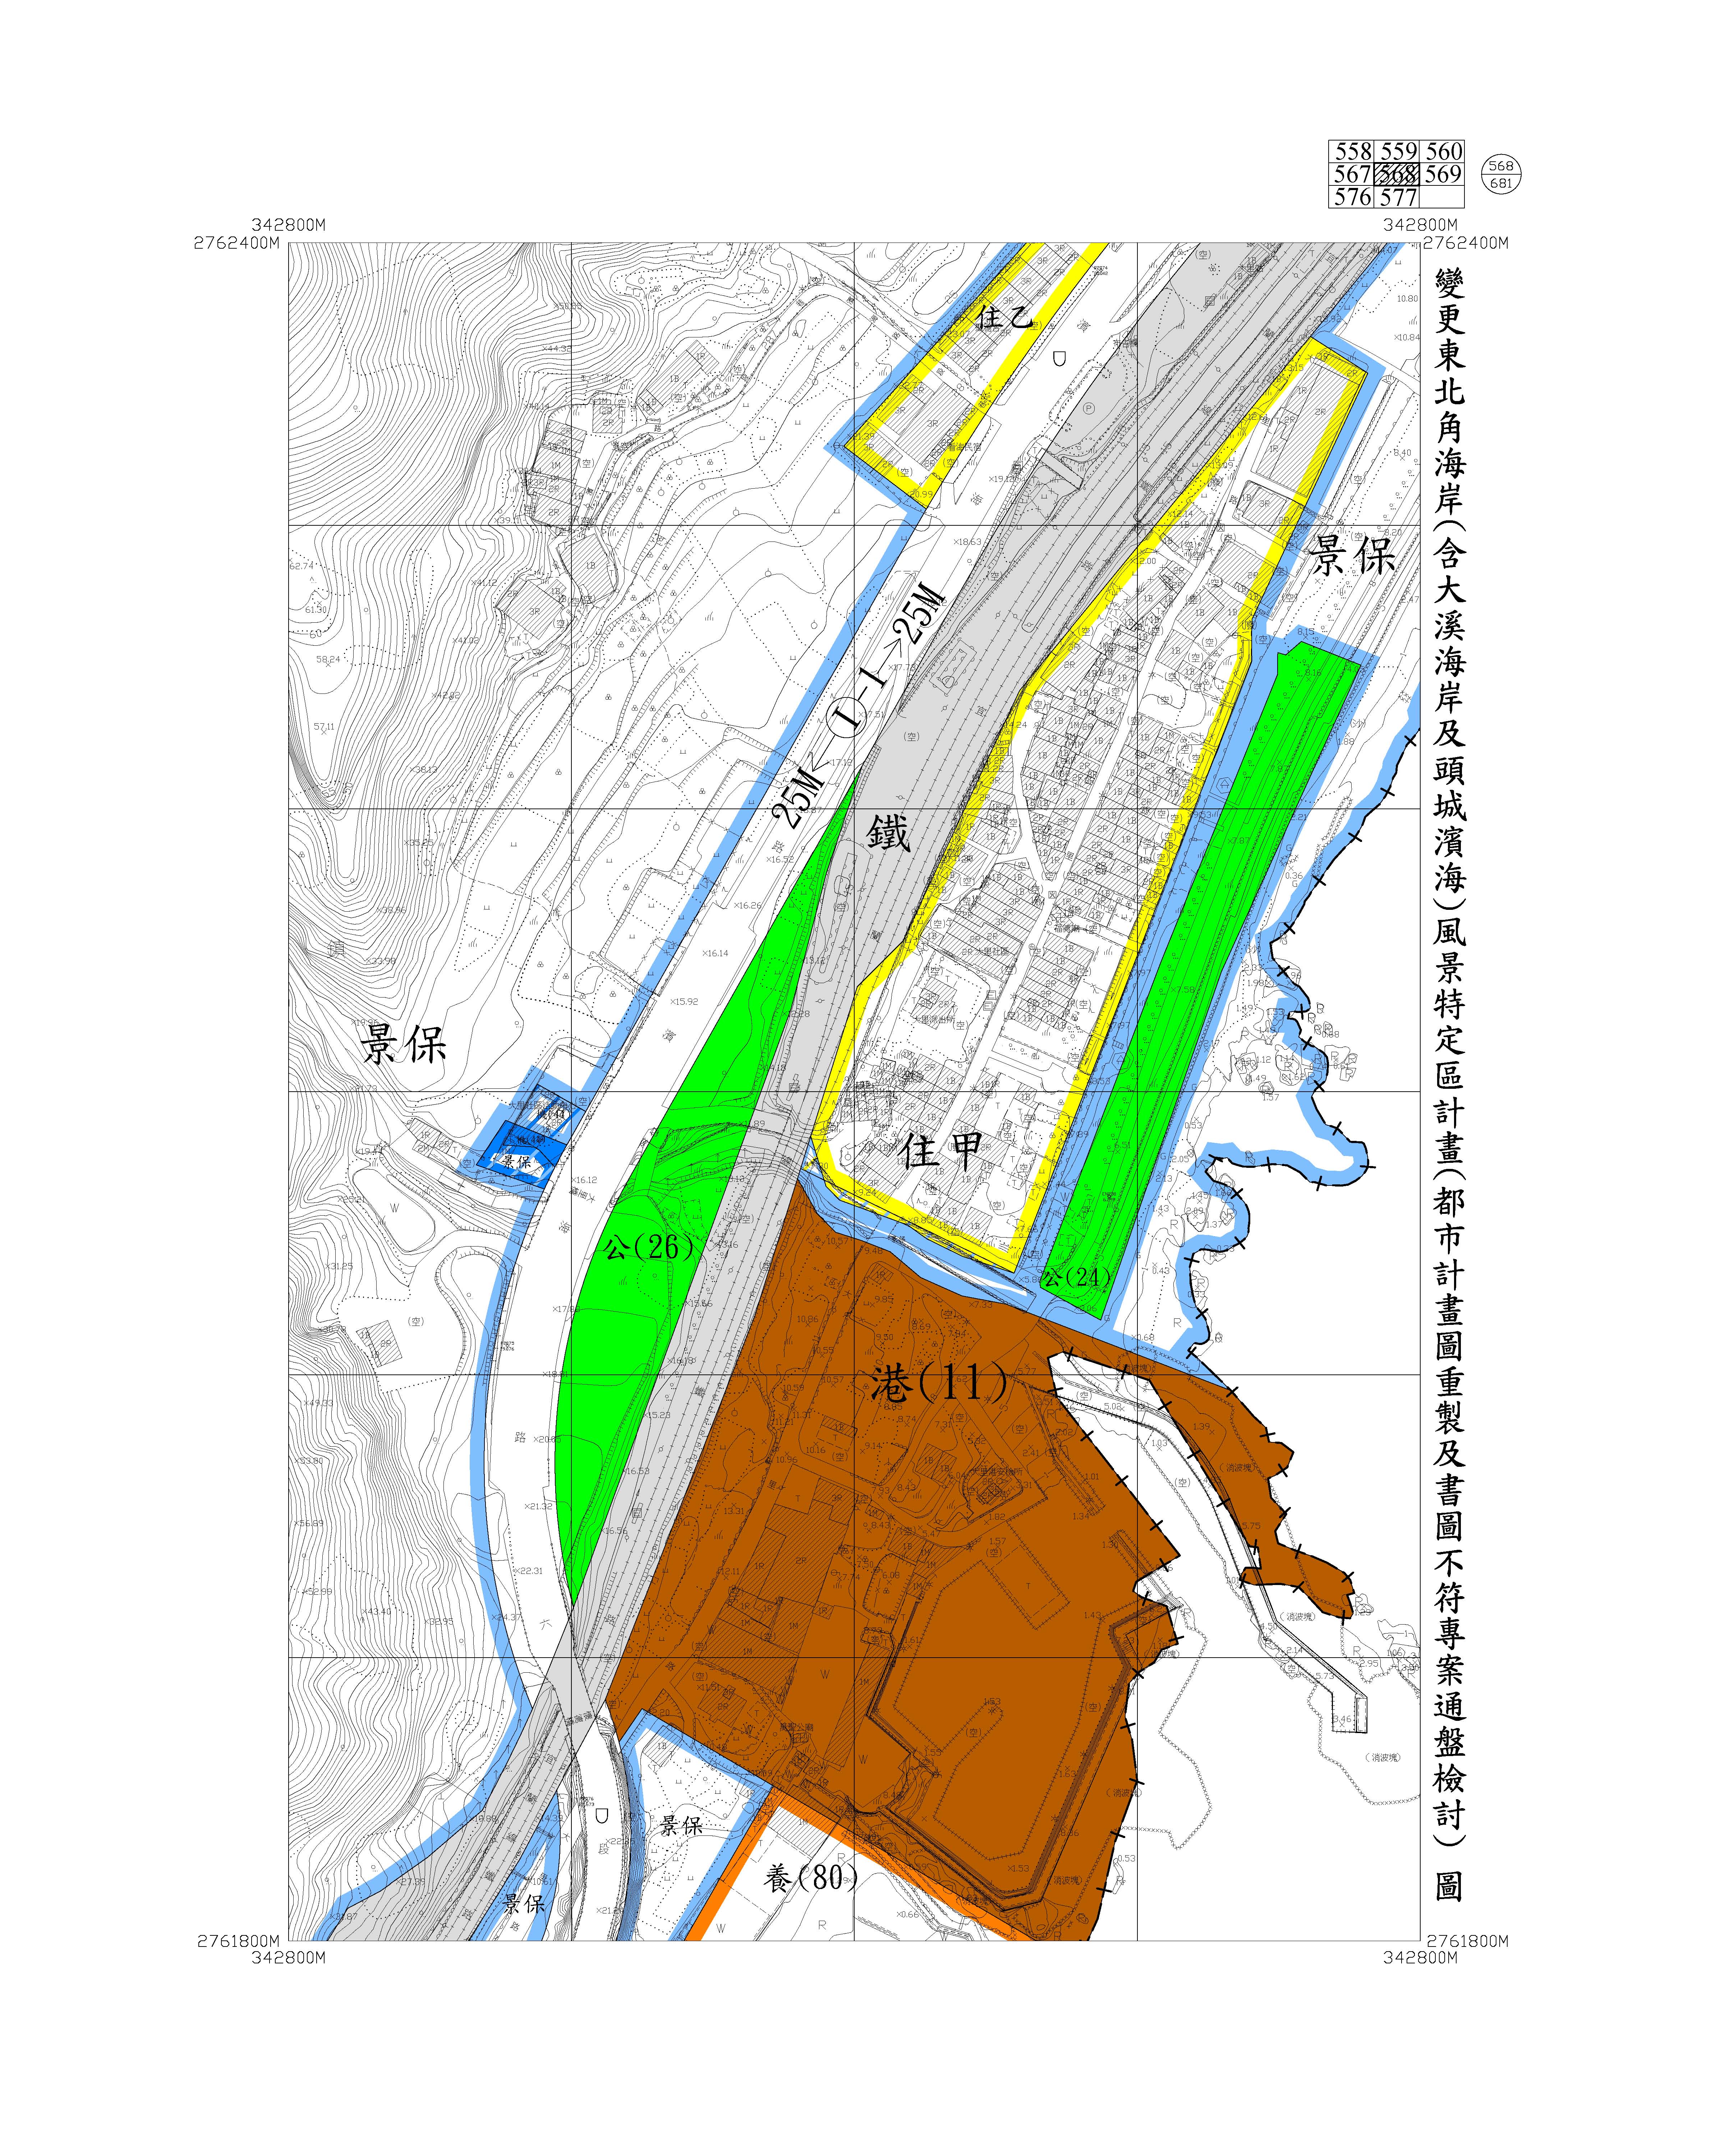 含大溪海岸及頭城濱海都市計畫圖重製及書圖不符專案通盤檢討圖資577